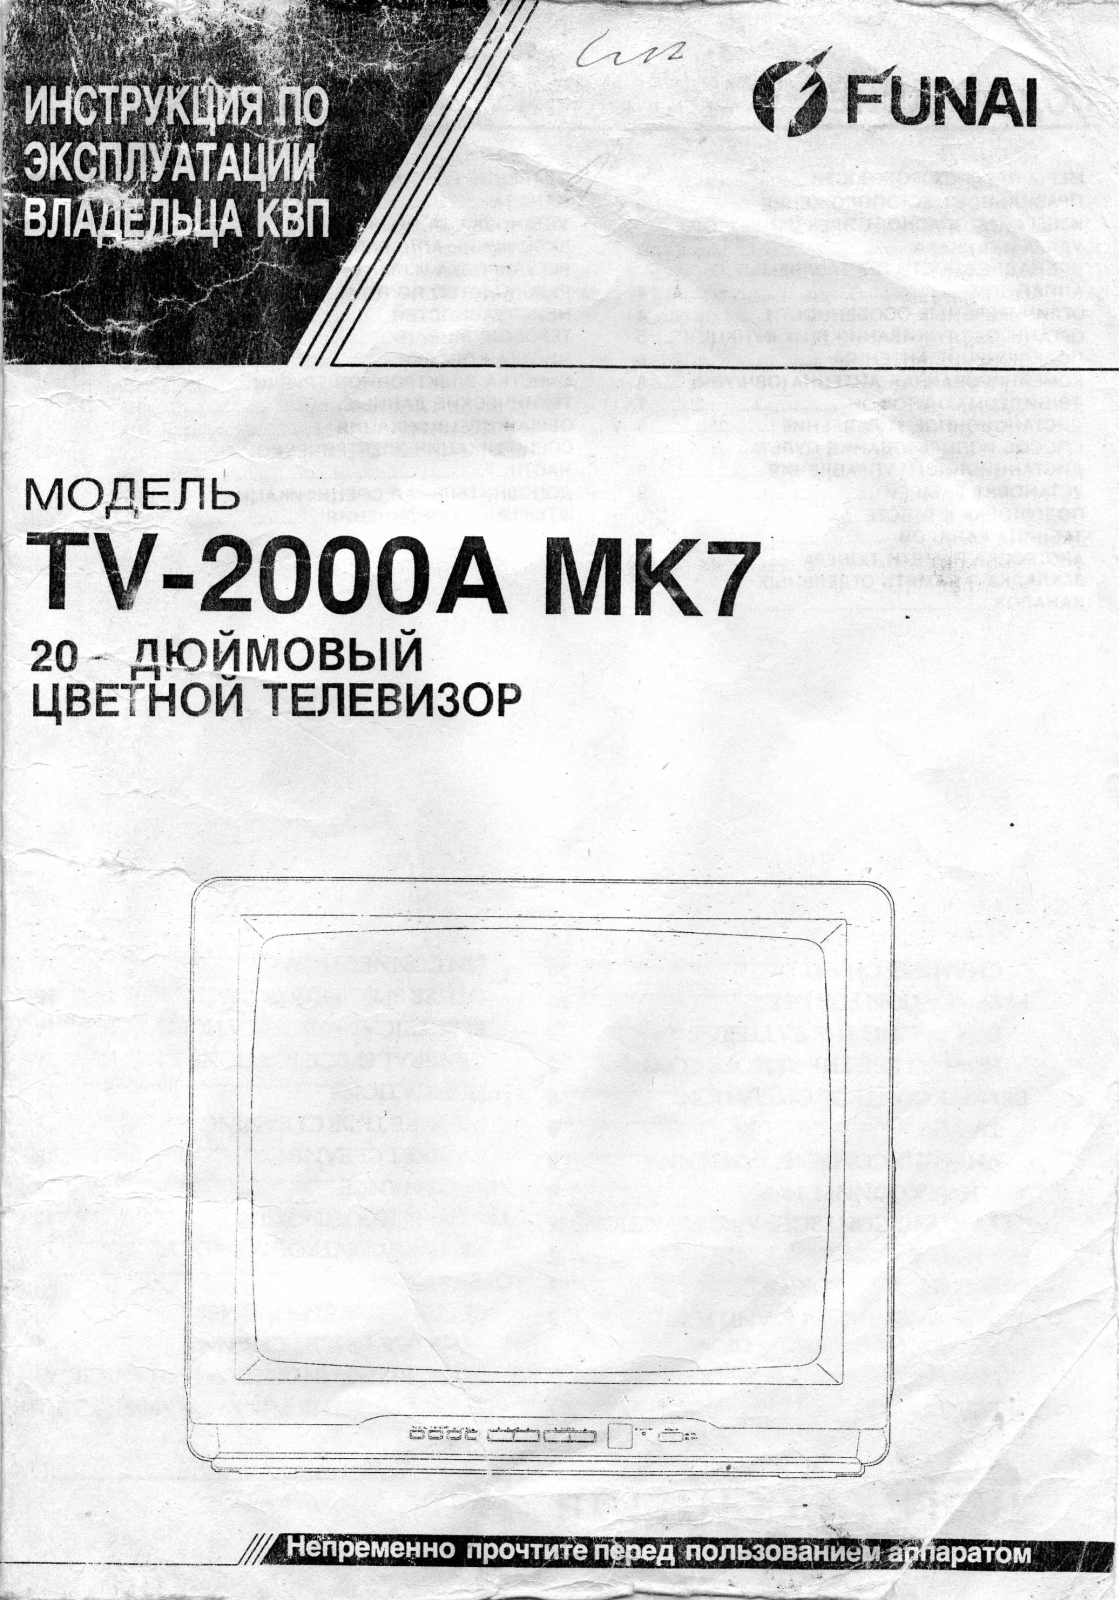 Funai TV-2100A MK7 Manual